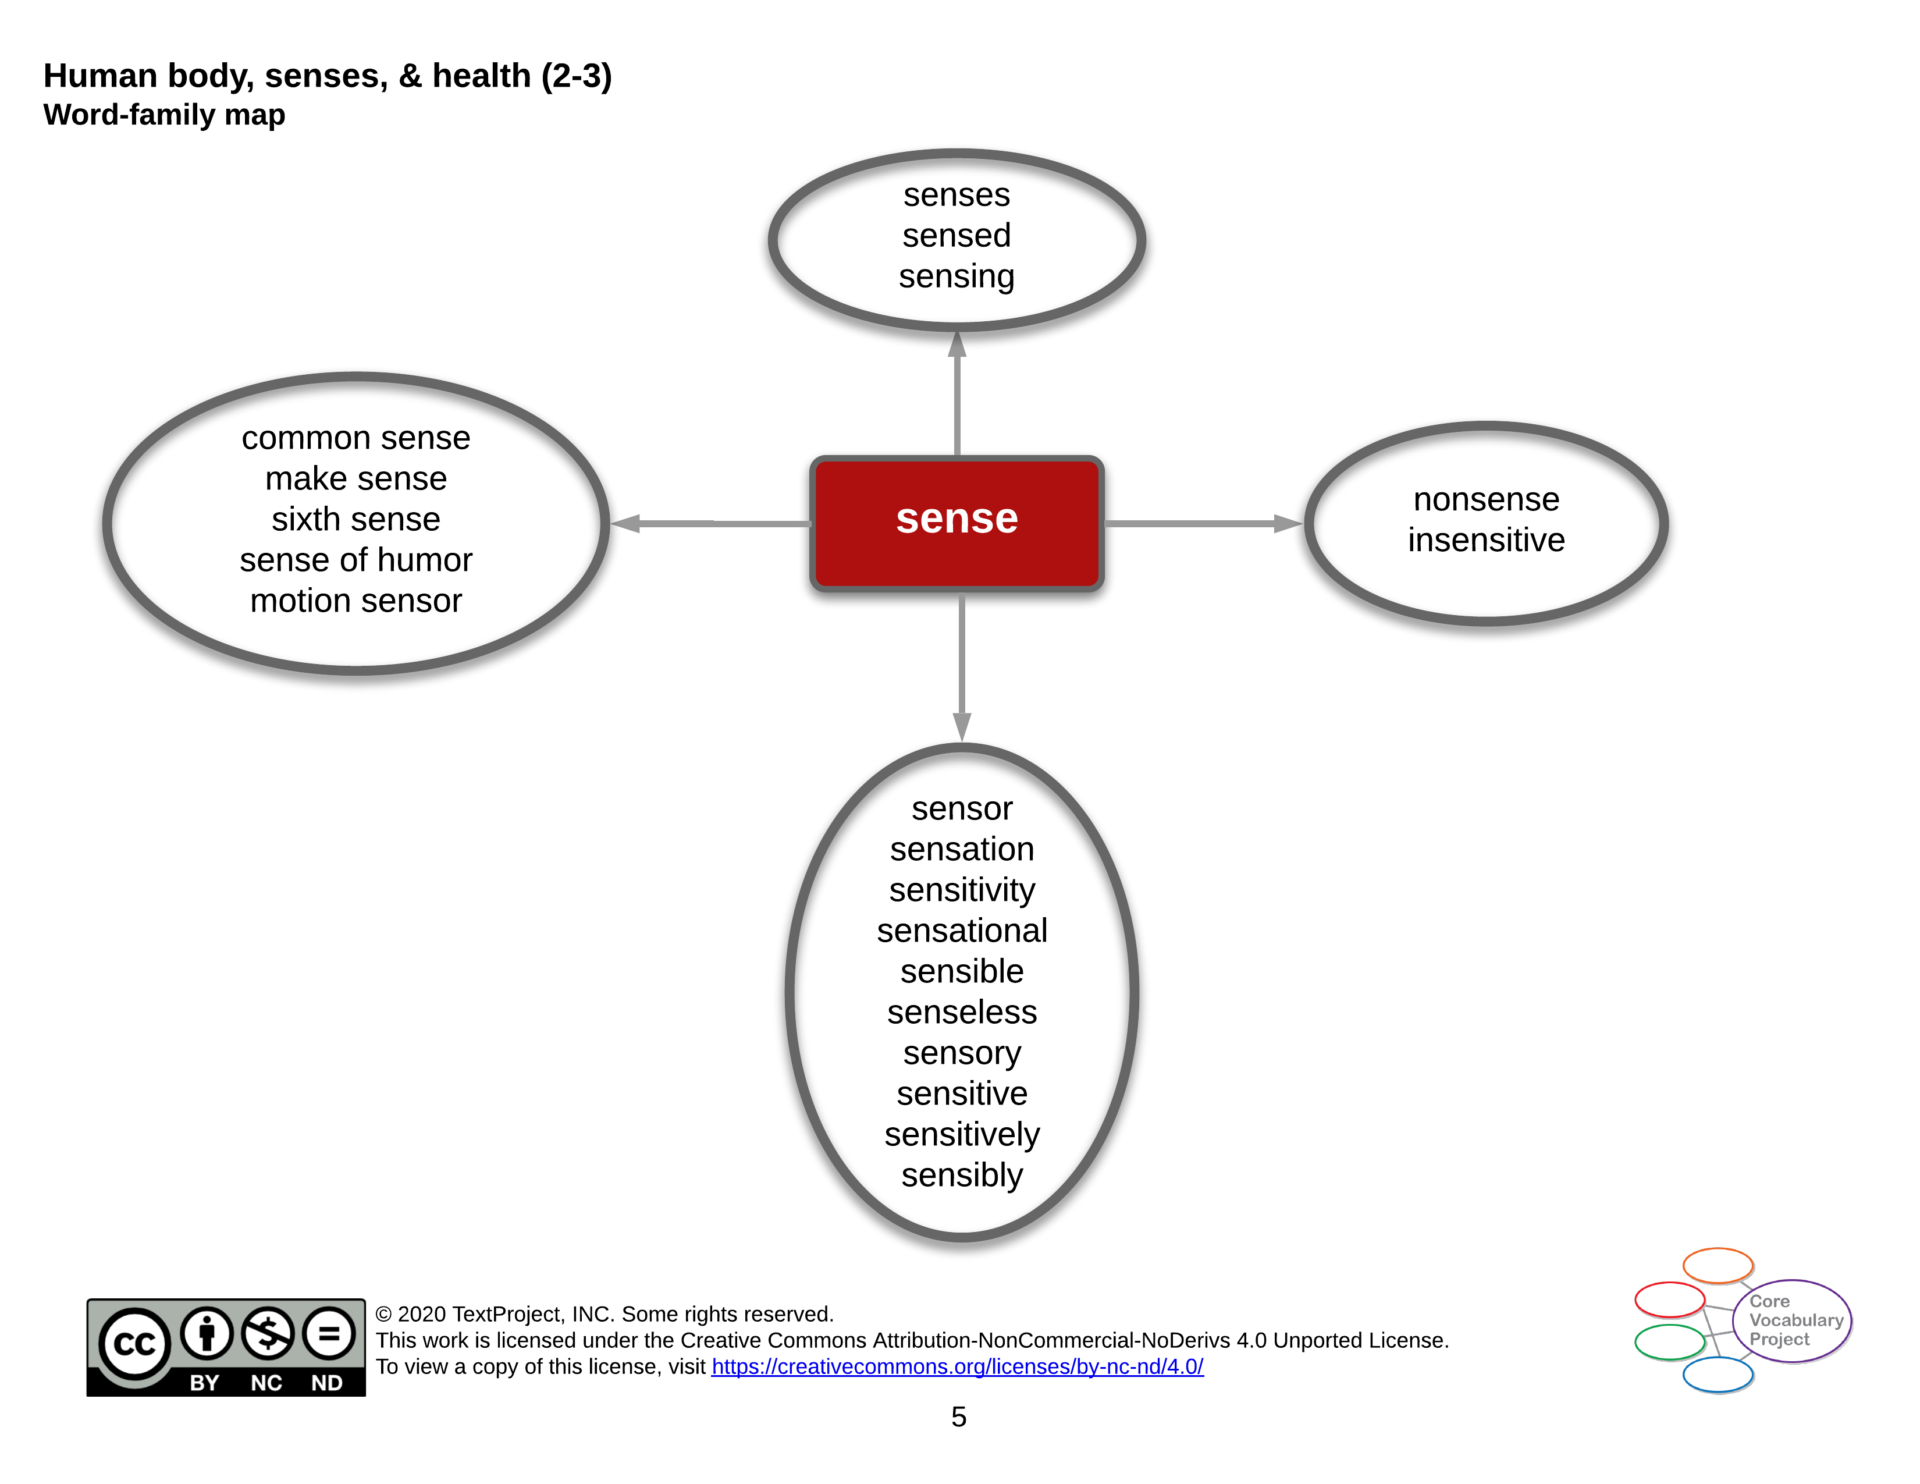 Human-body-senses-and-health-CVP-Gr2-3-sense.png